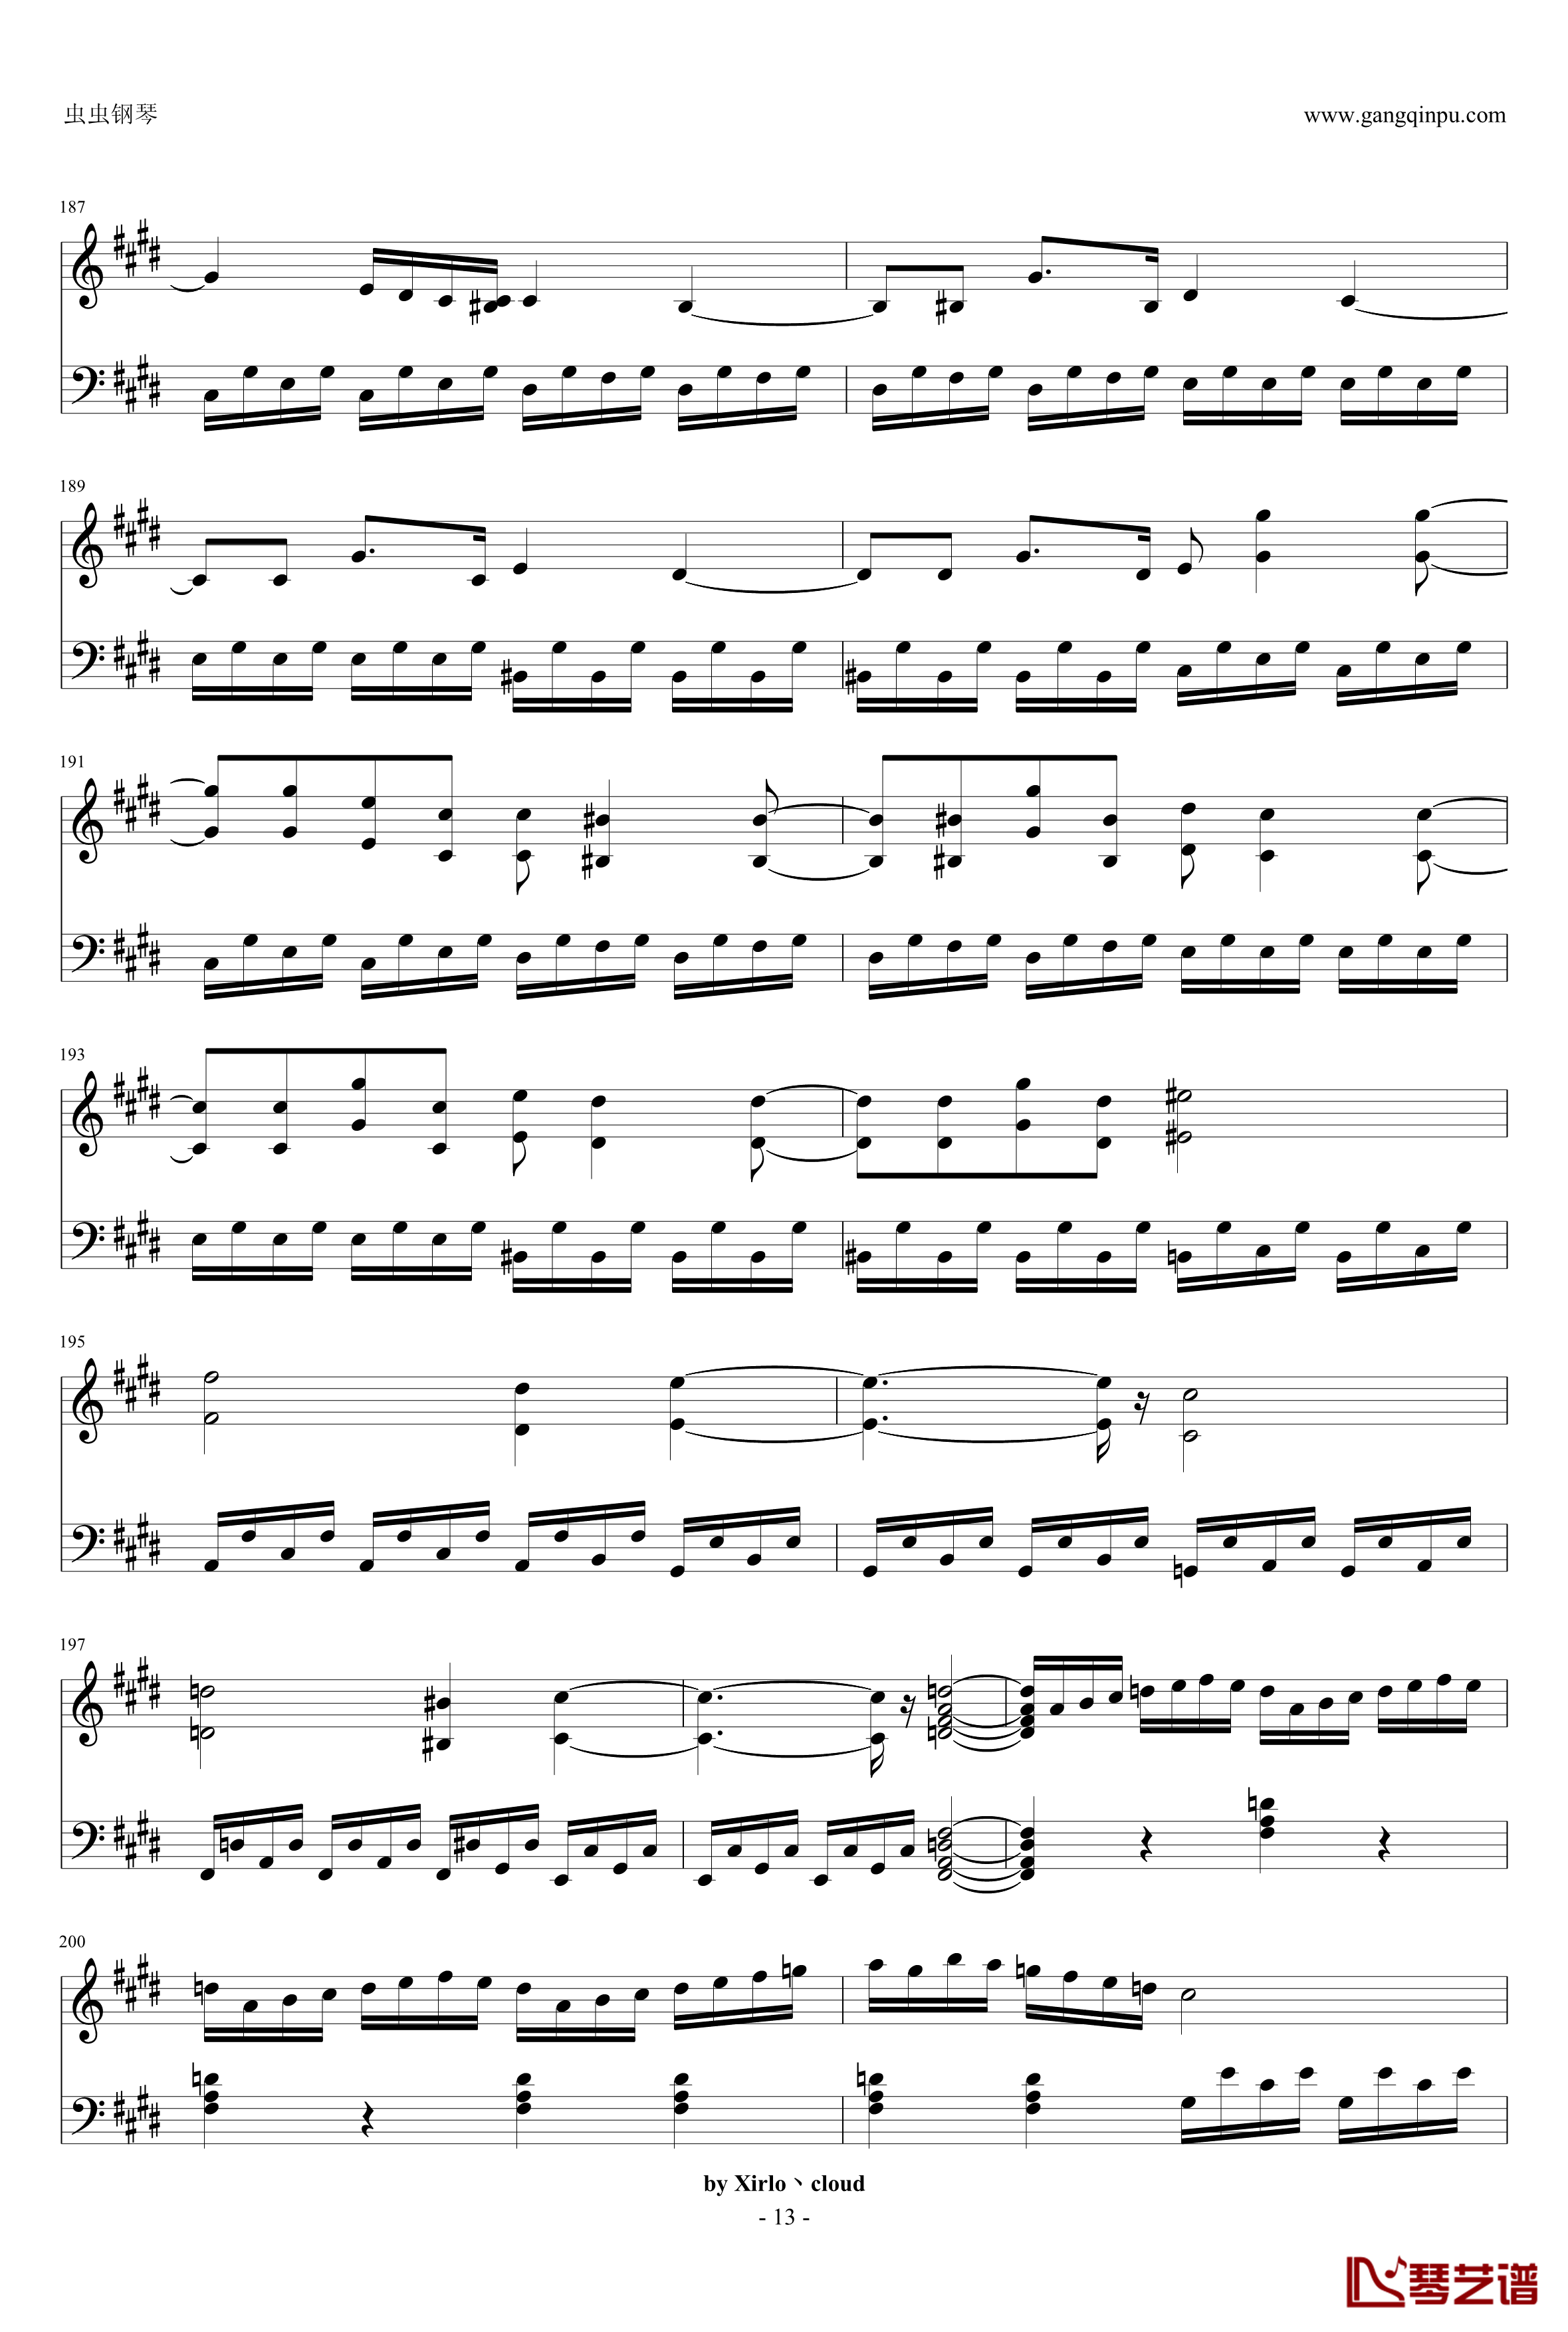 月光奏鸣曲钢琴谱-改编版-贝多芬-beethoven13